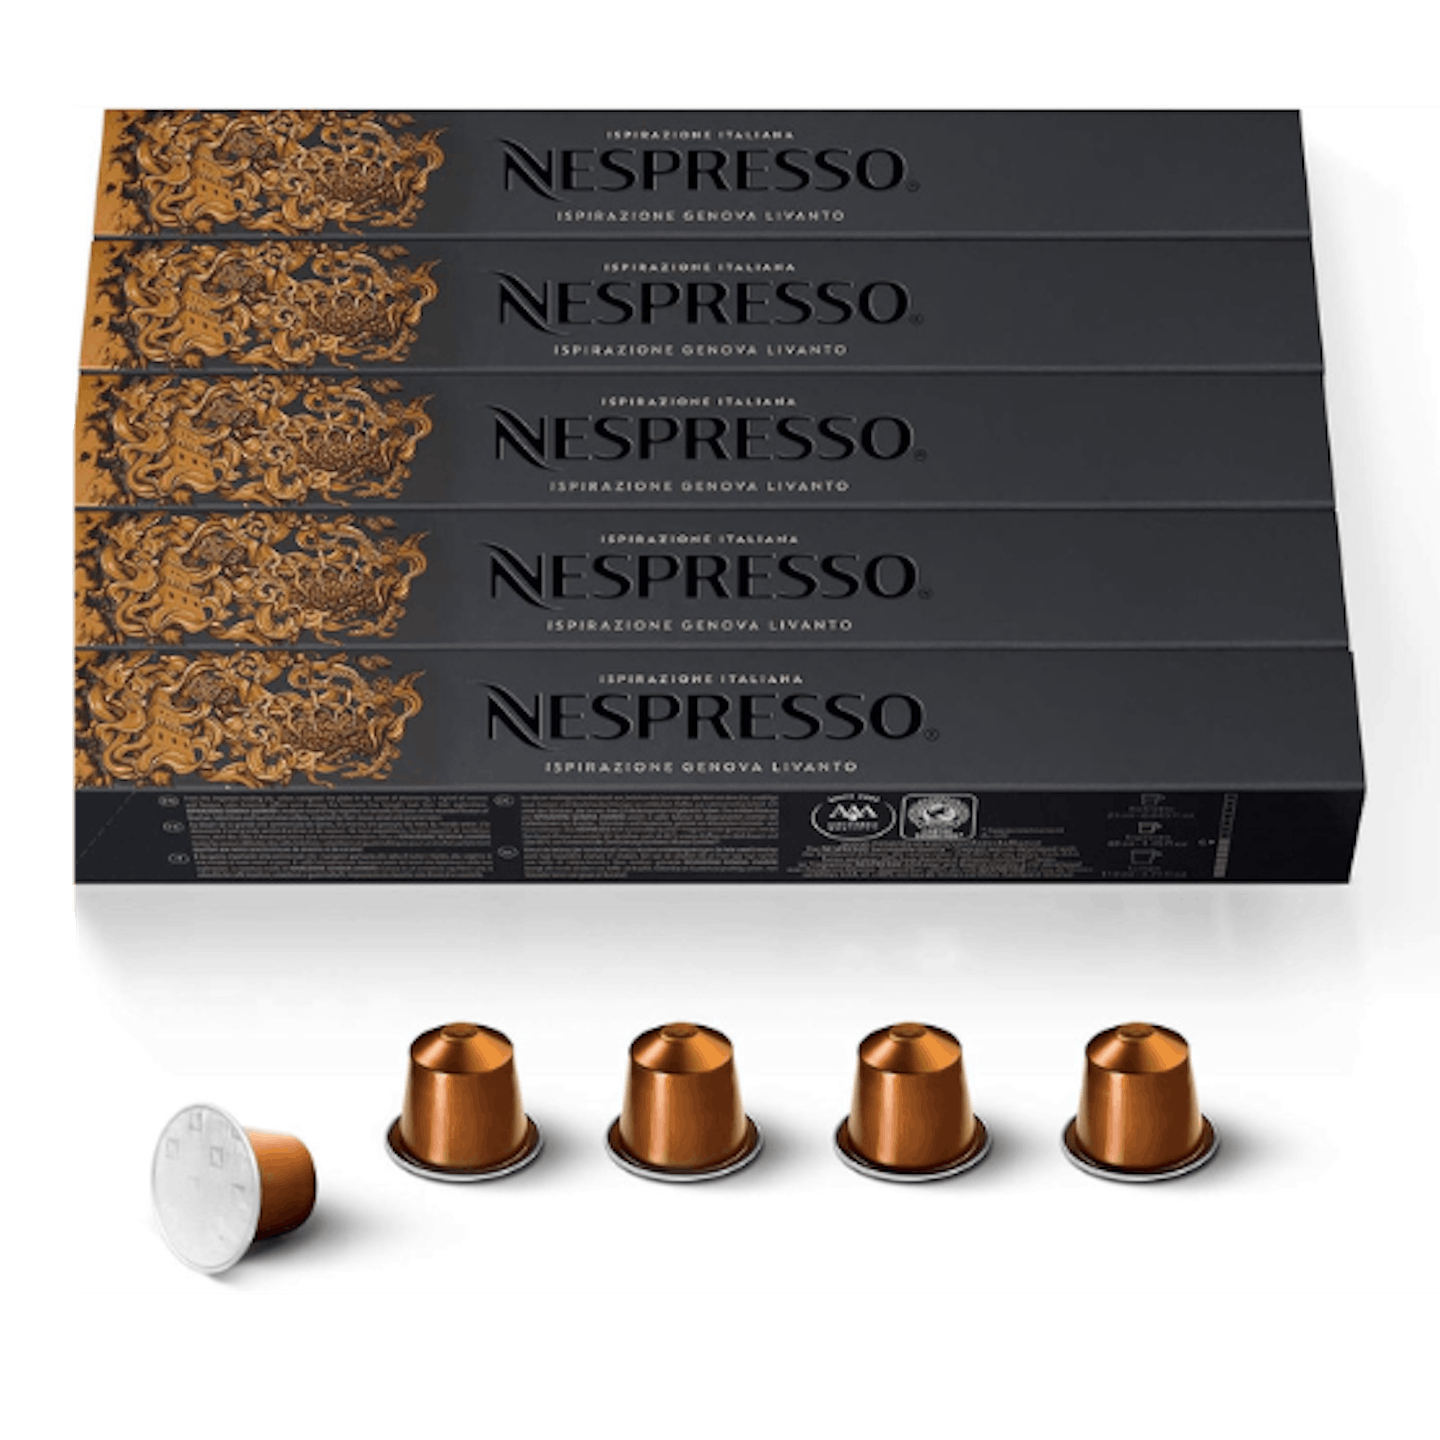 Nespresso black Friday offers livanto